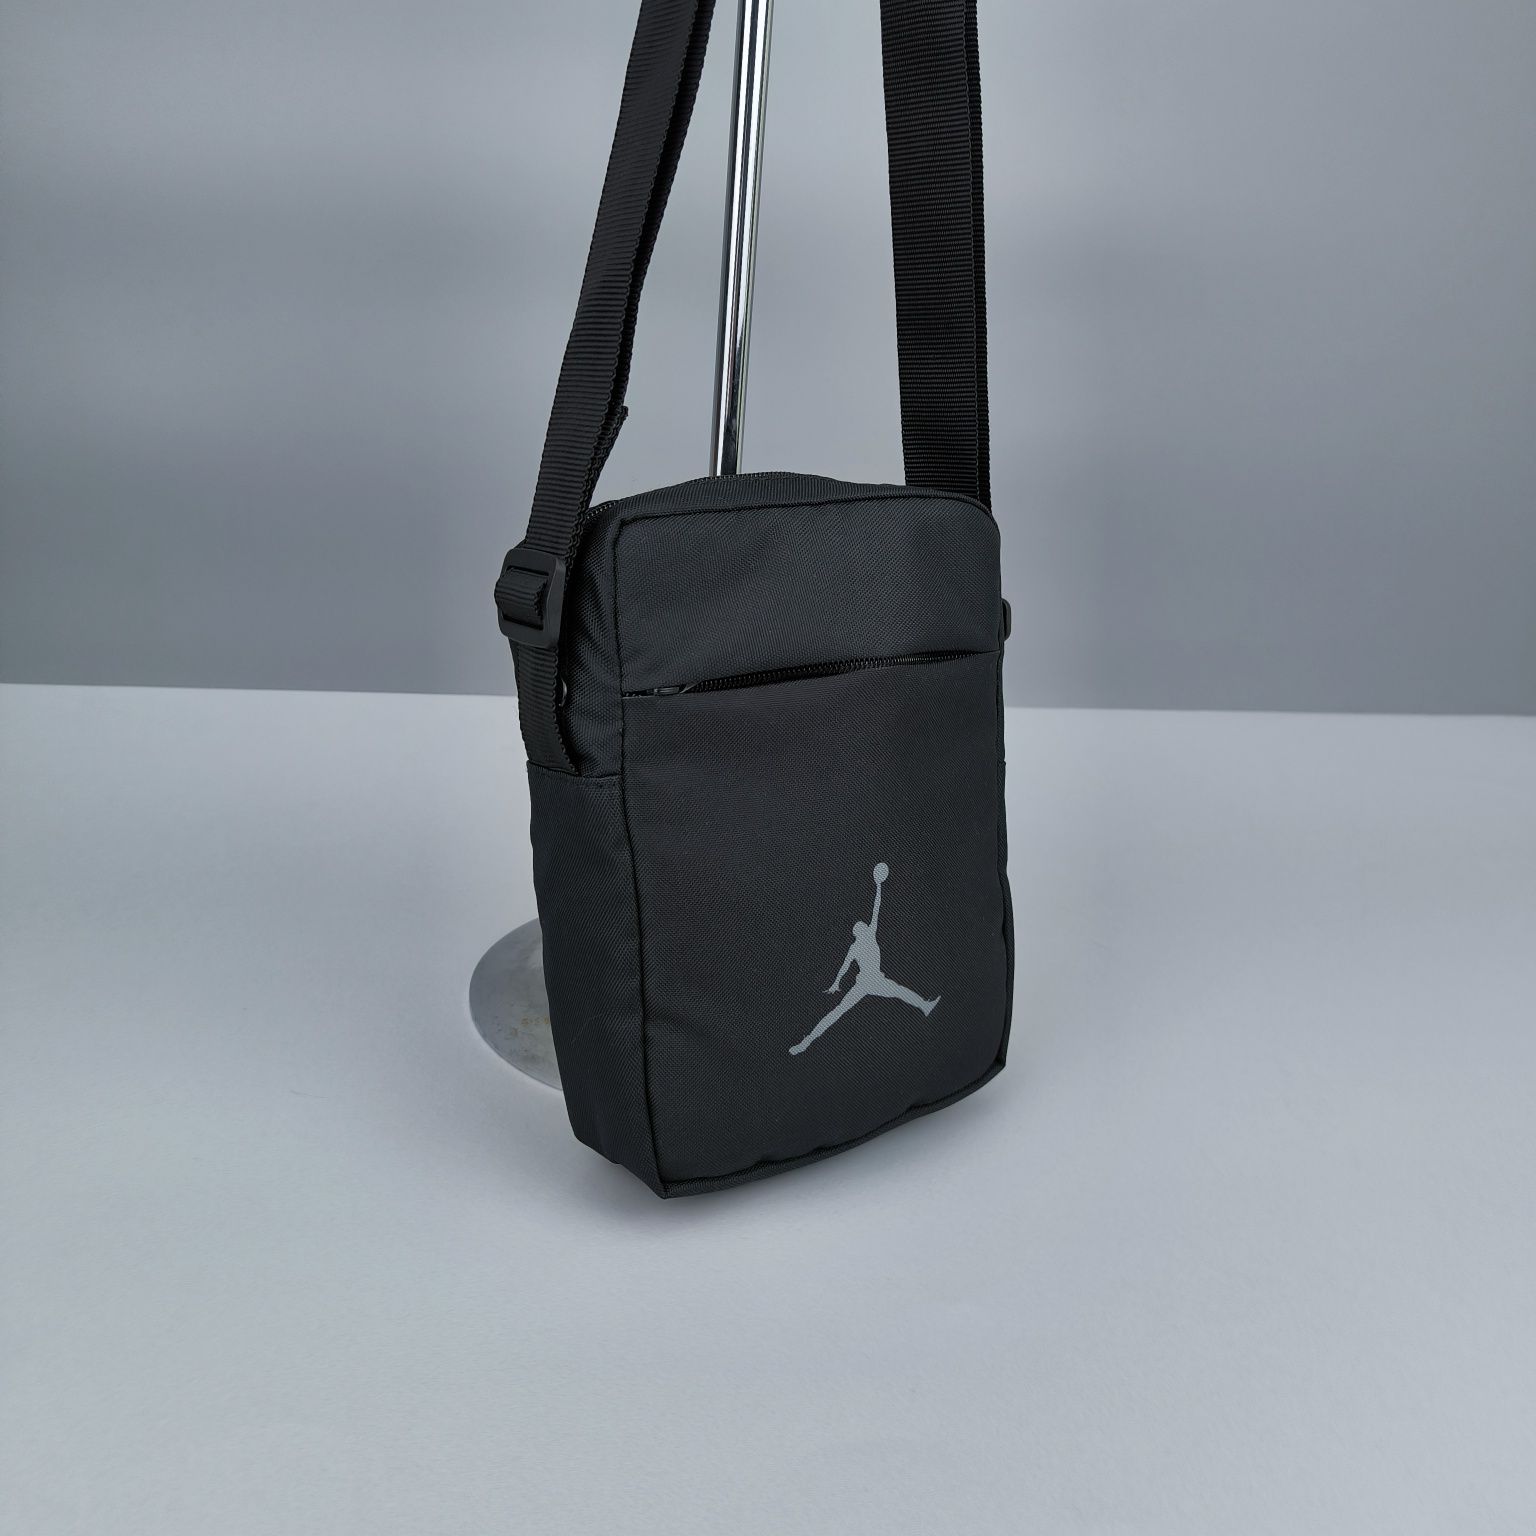 Сумка спортивна Nike Jordan спортивная через плече мессенджер мини